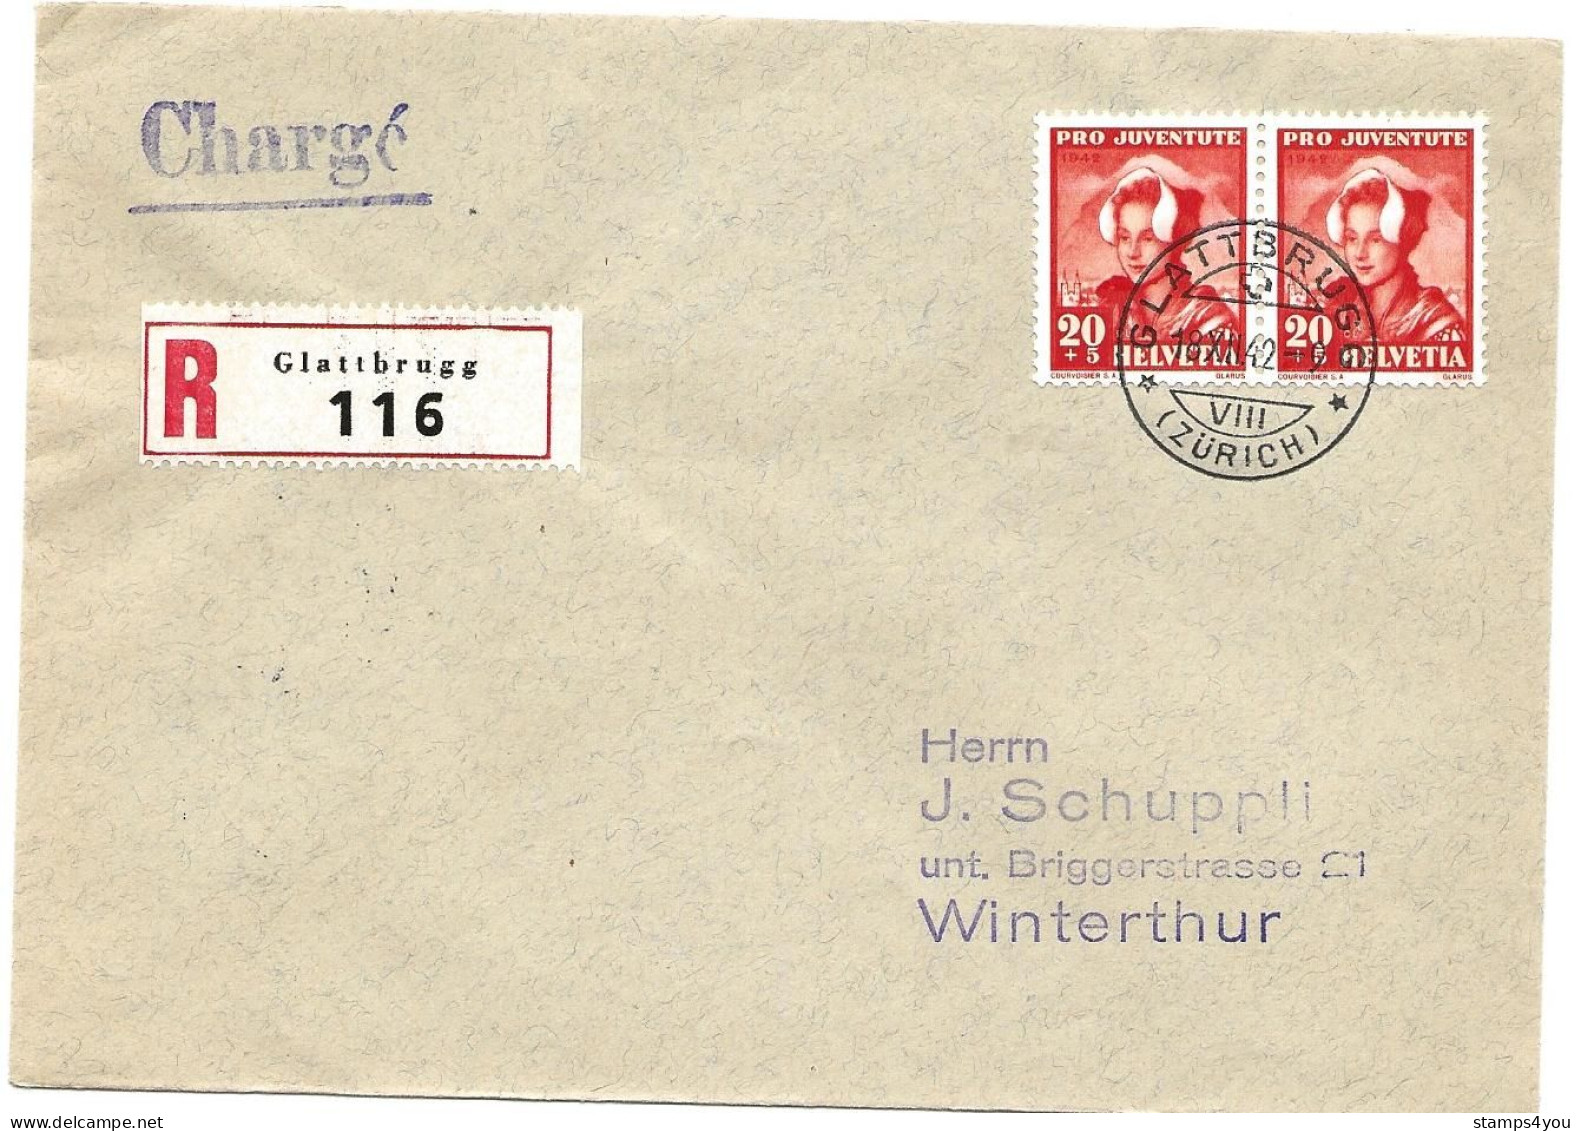 33 - 79 - Enveloppe Recommandée Envoyée De Glattbrugg 1942 - Timbres Pro Juventute - Covers & Documents